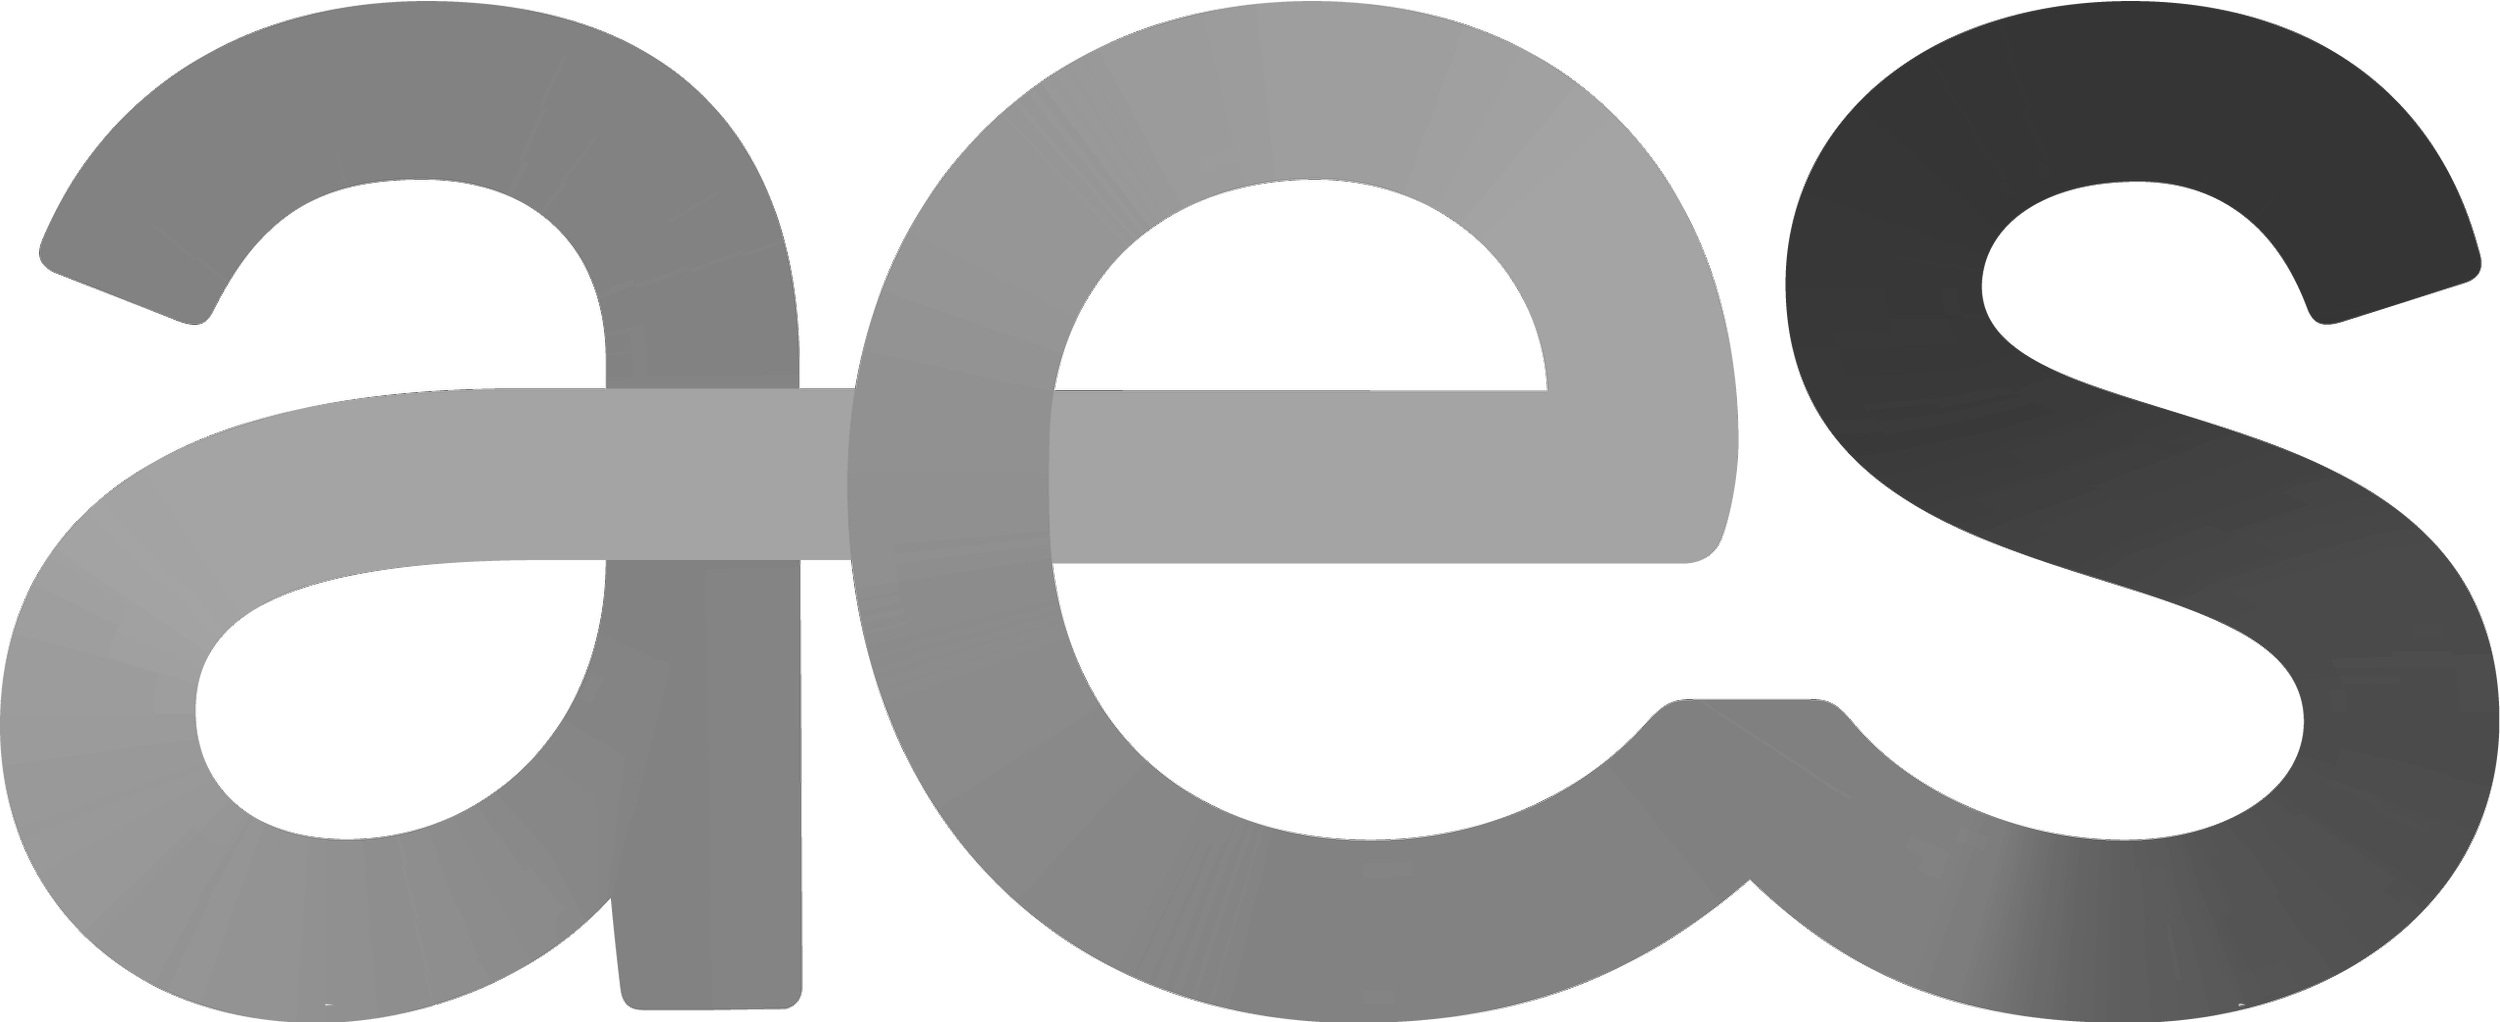 AES_Logo-RBG-L.jpg